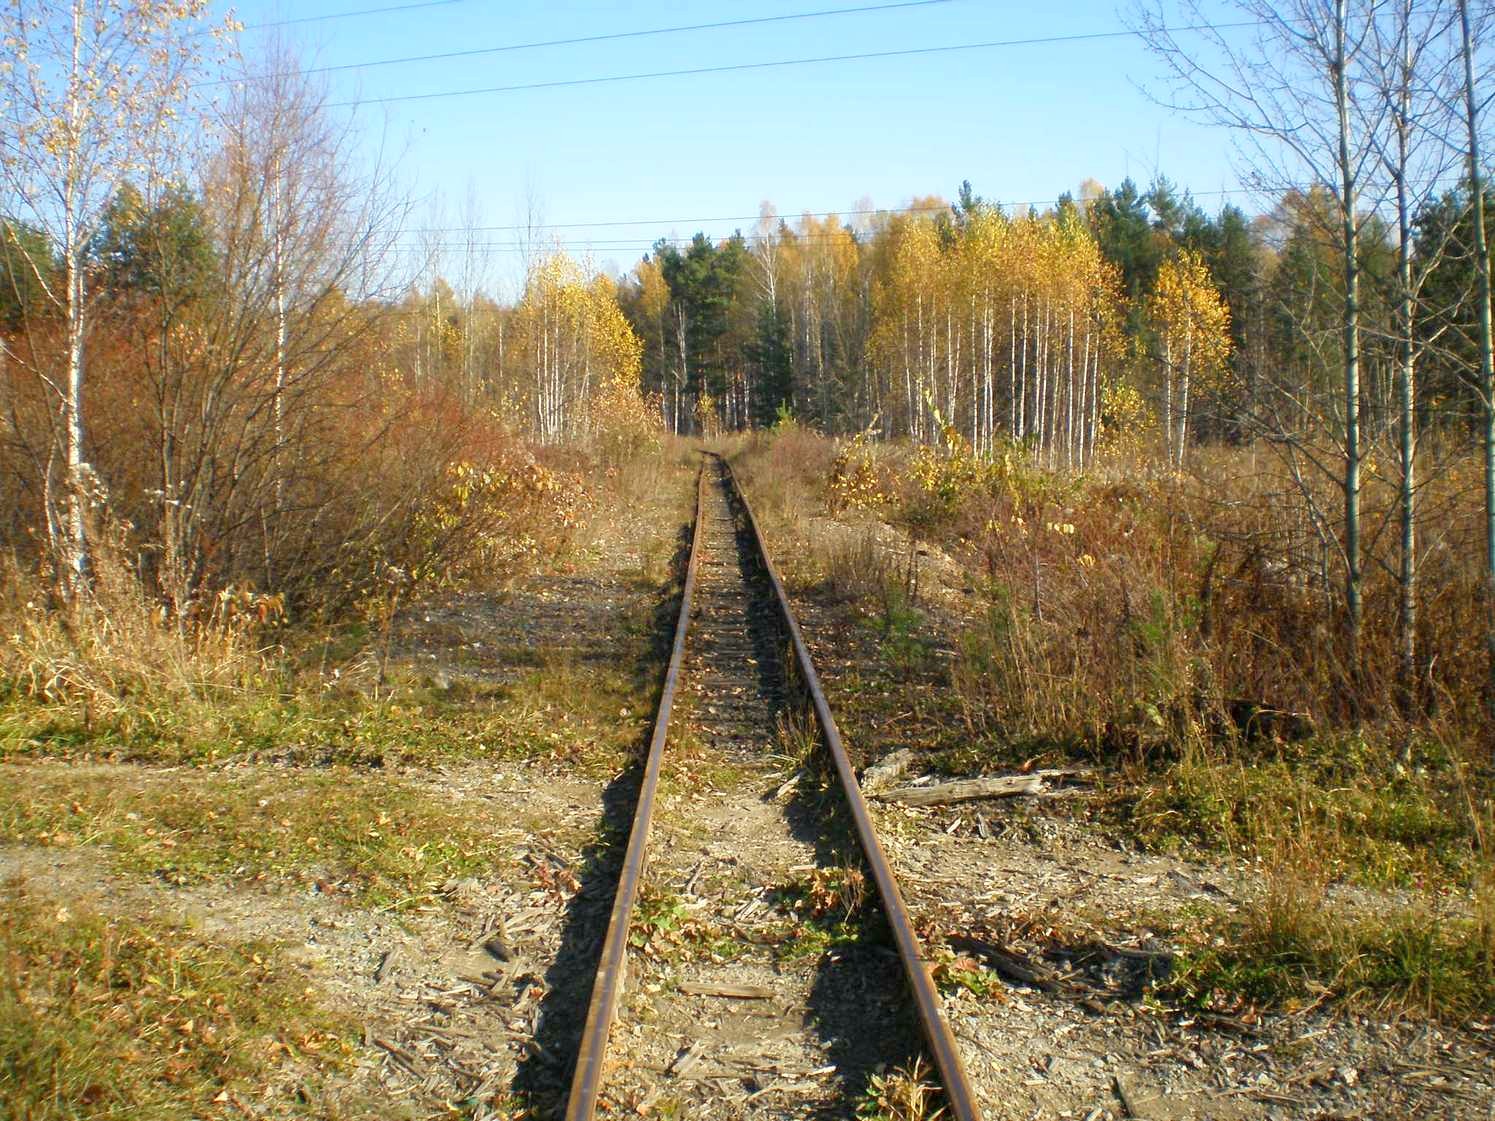 Висимо-Уткинская узкоколейная железная дорога  — фотографии, сделанные в 2007 году (часть 24)